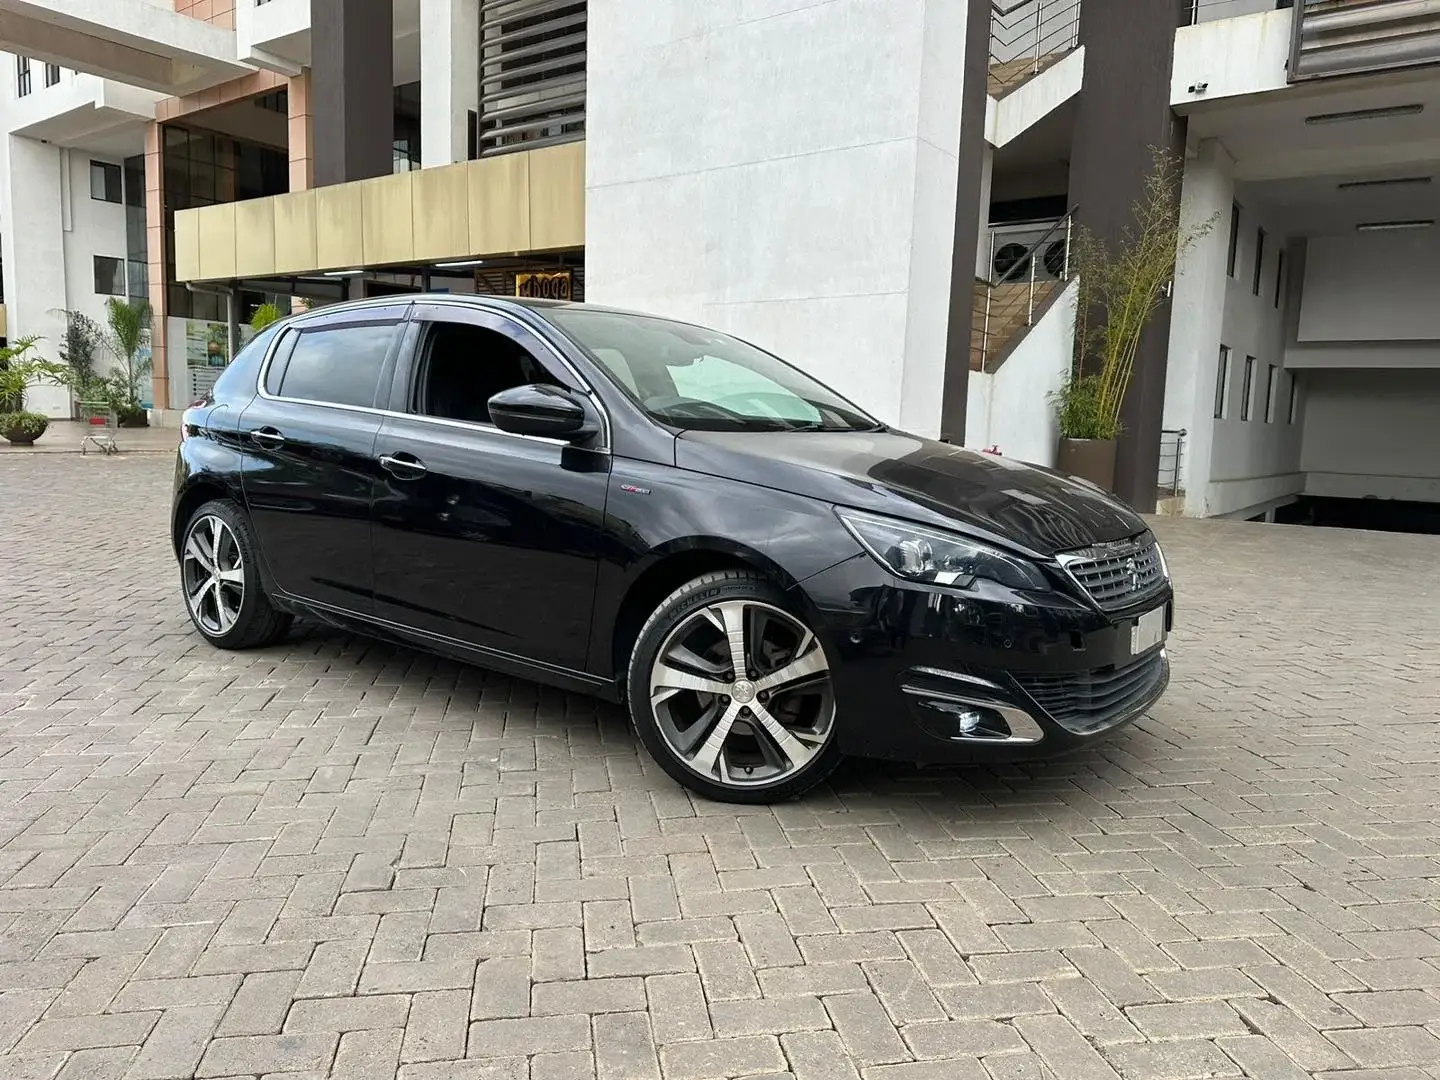 Peugeot 308 for Sale in Kenya